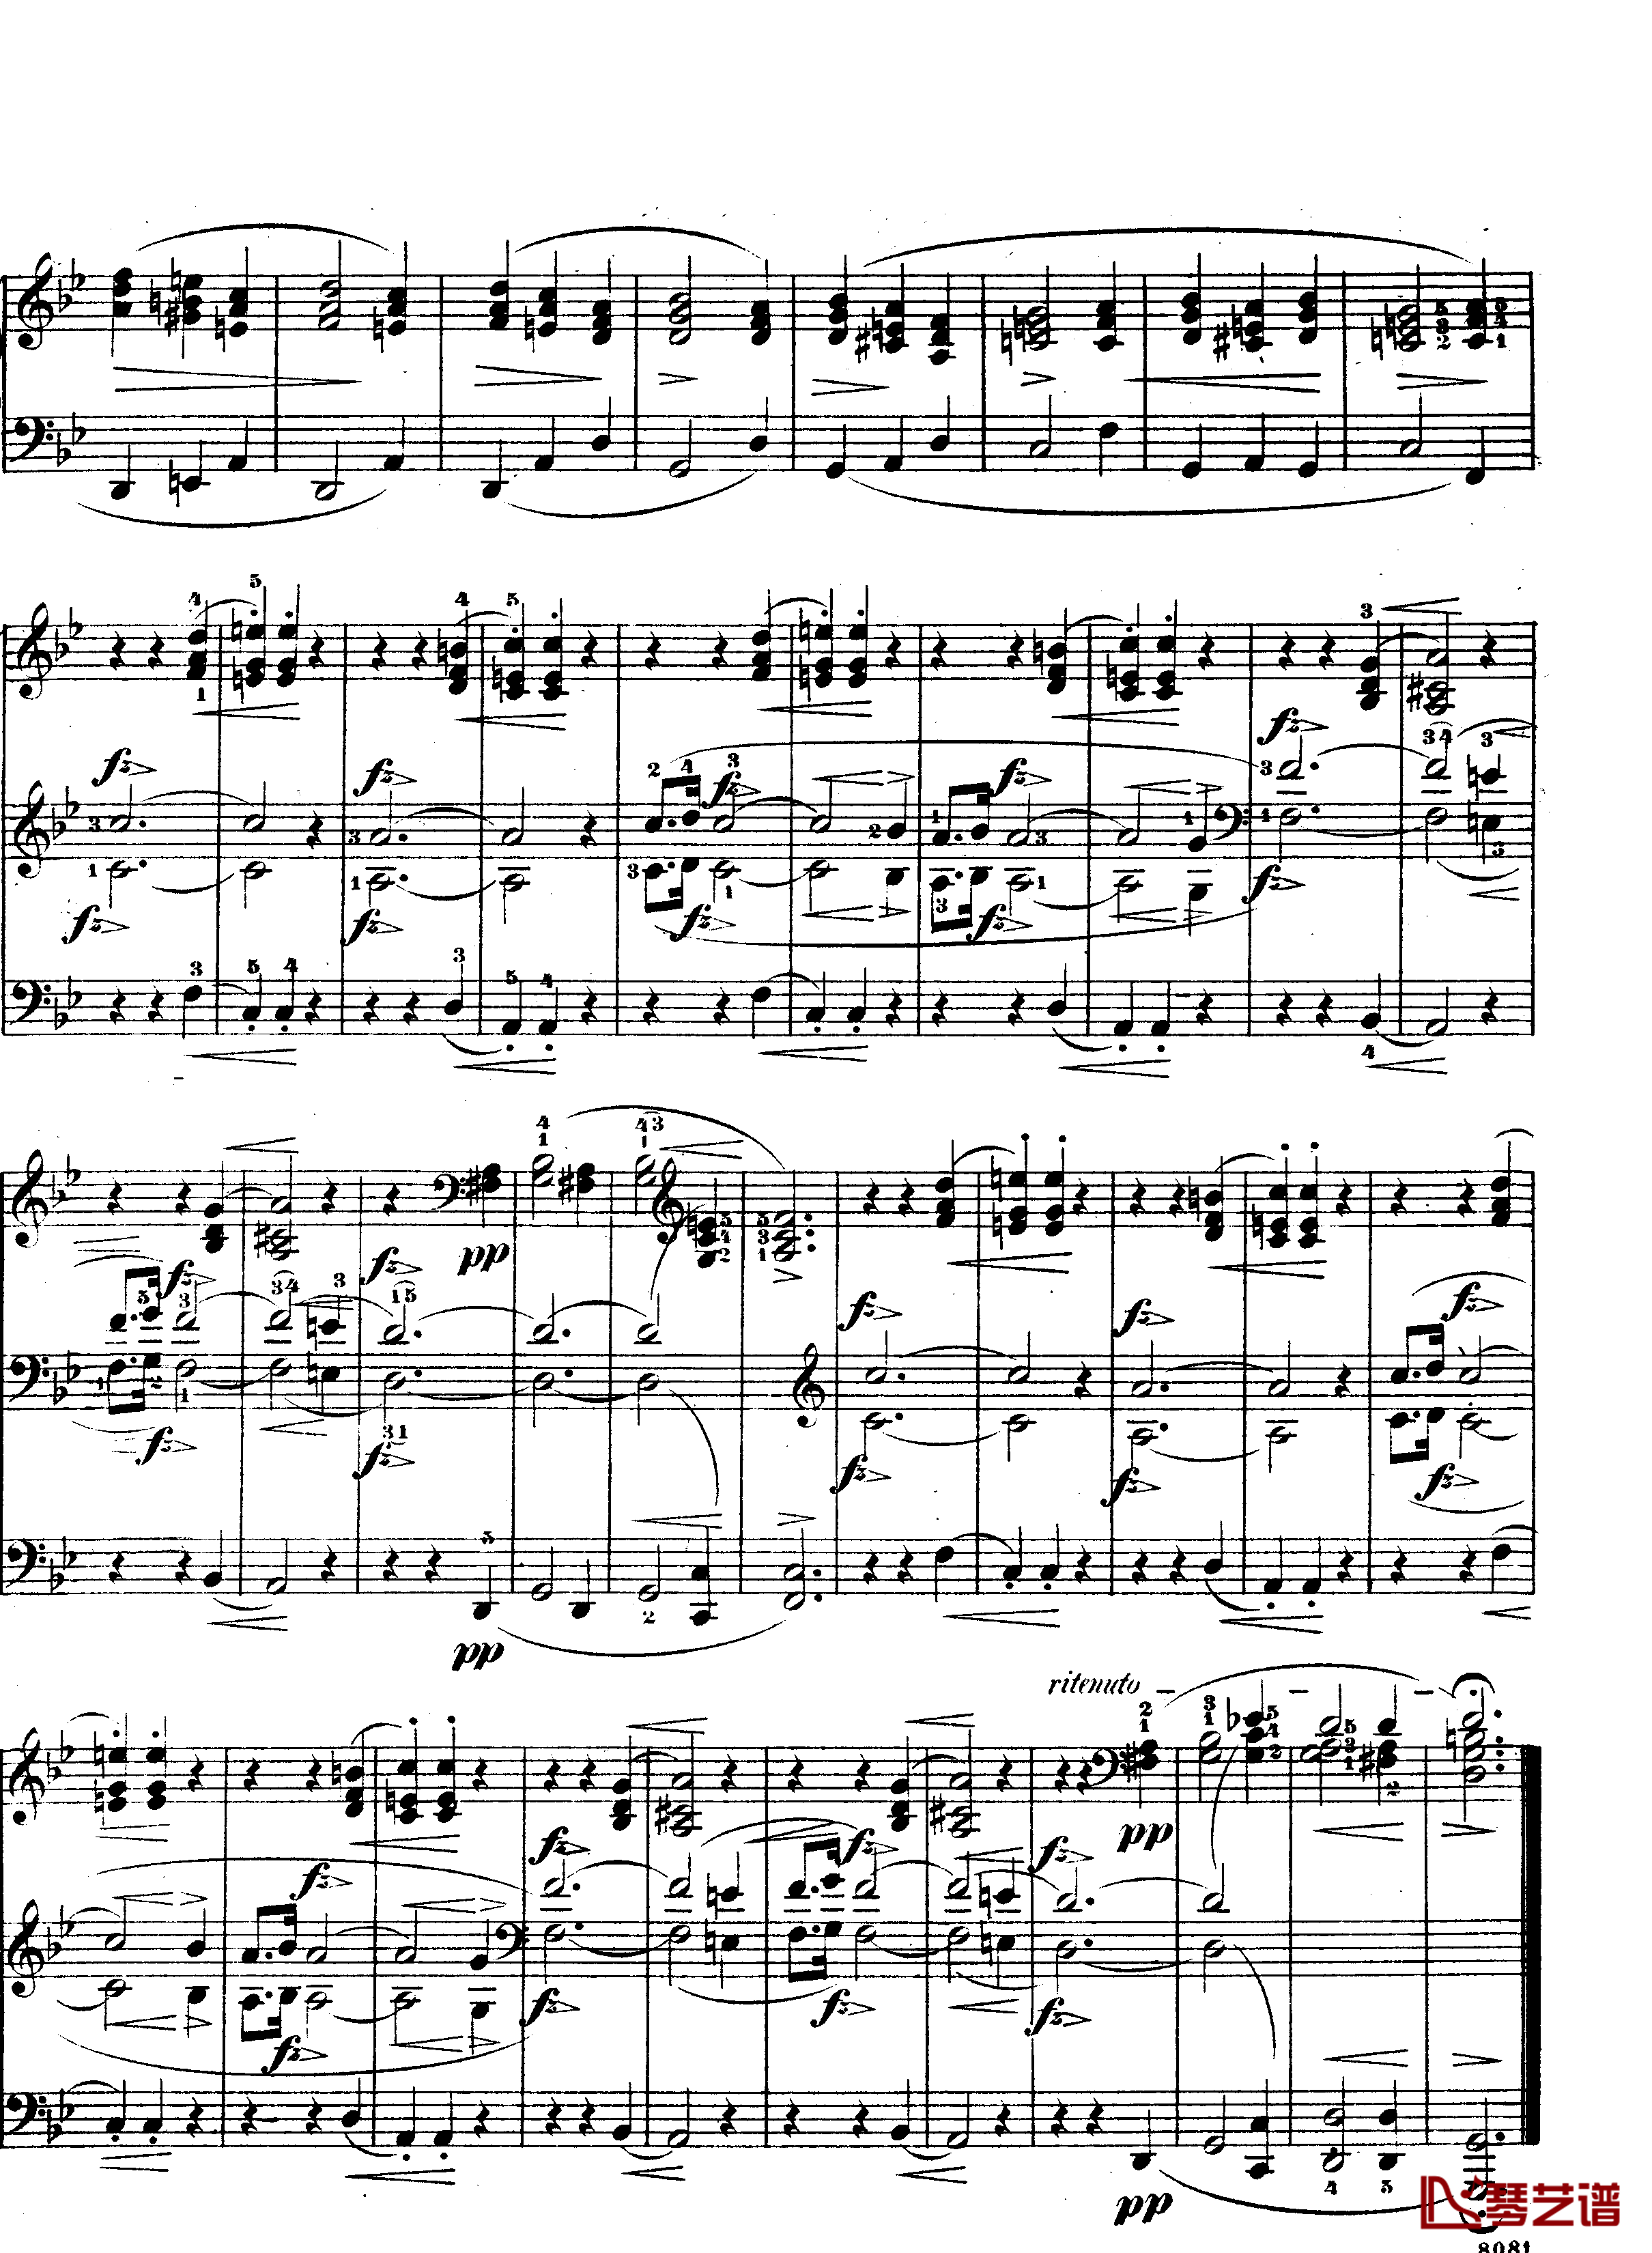 升F大调夜曲作品15号钢琴谱-Nocturne Op.15 No.3-肖邦-chopin3